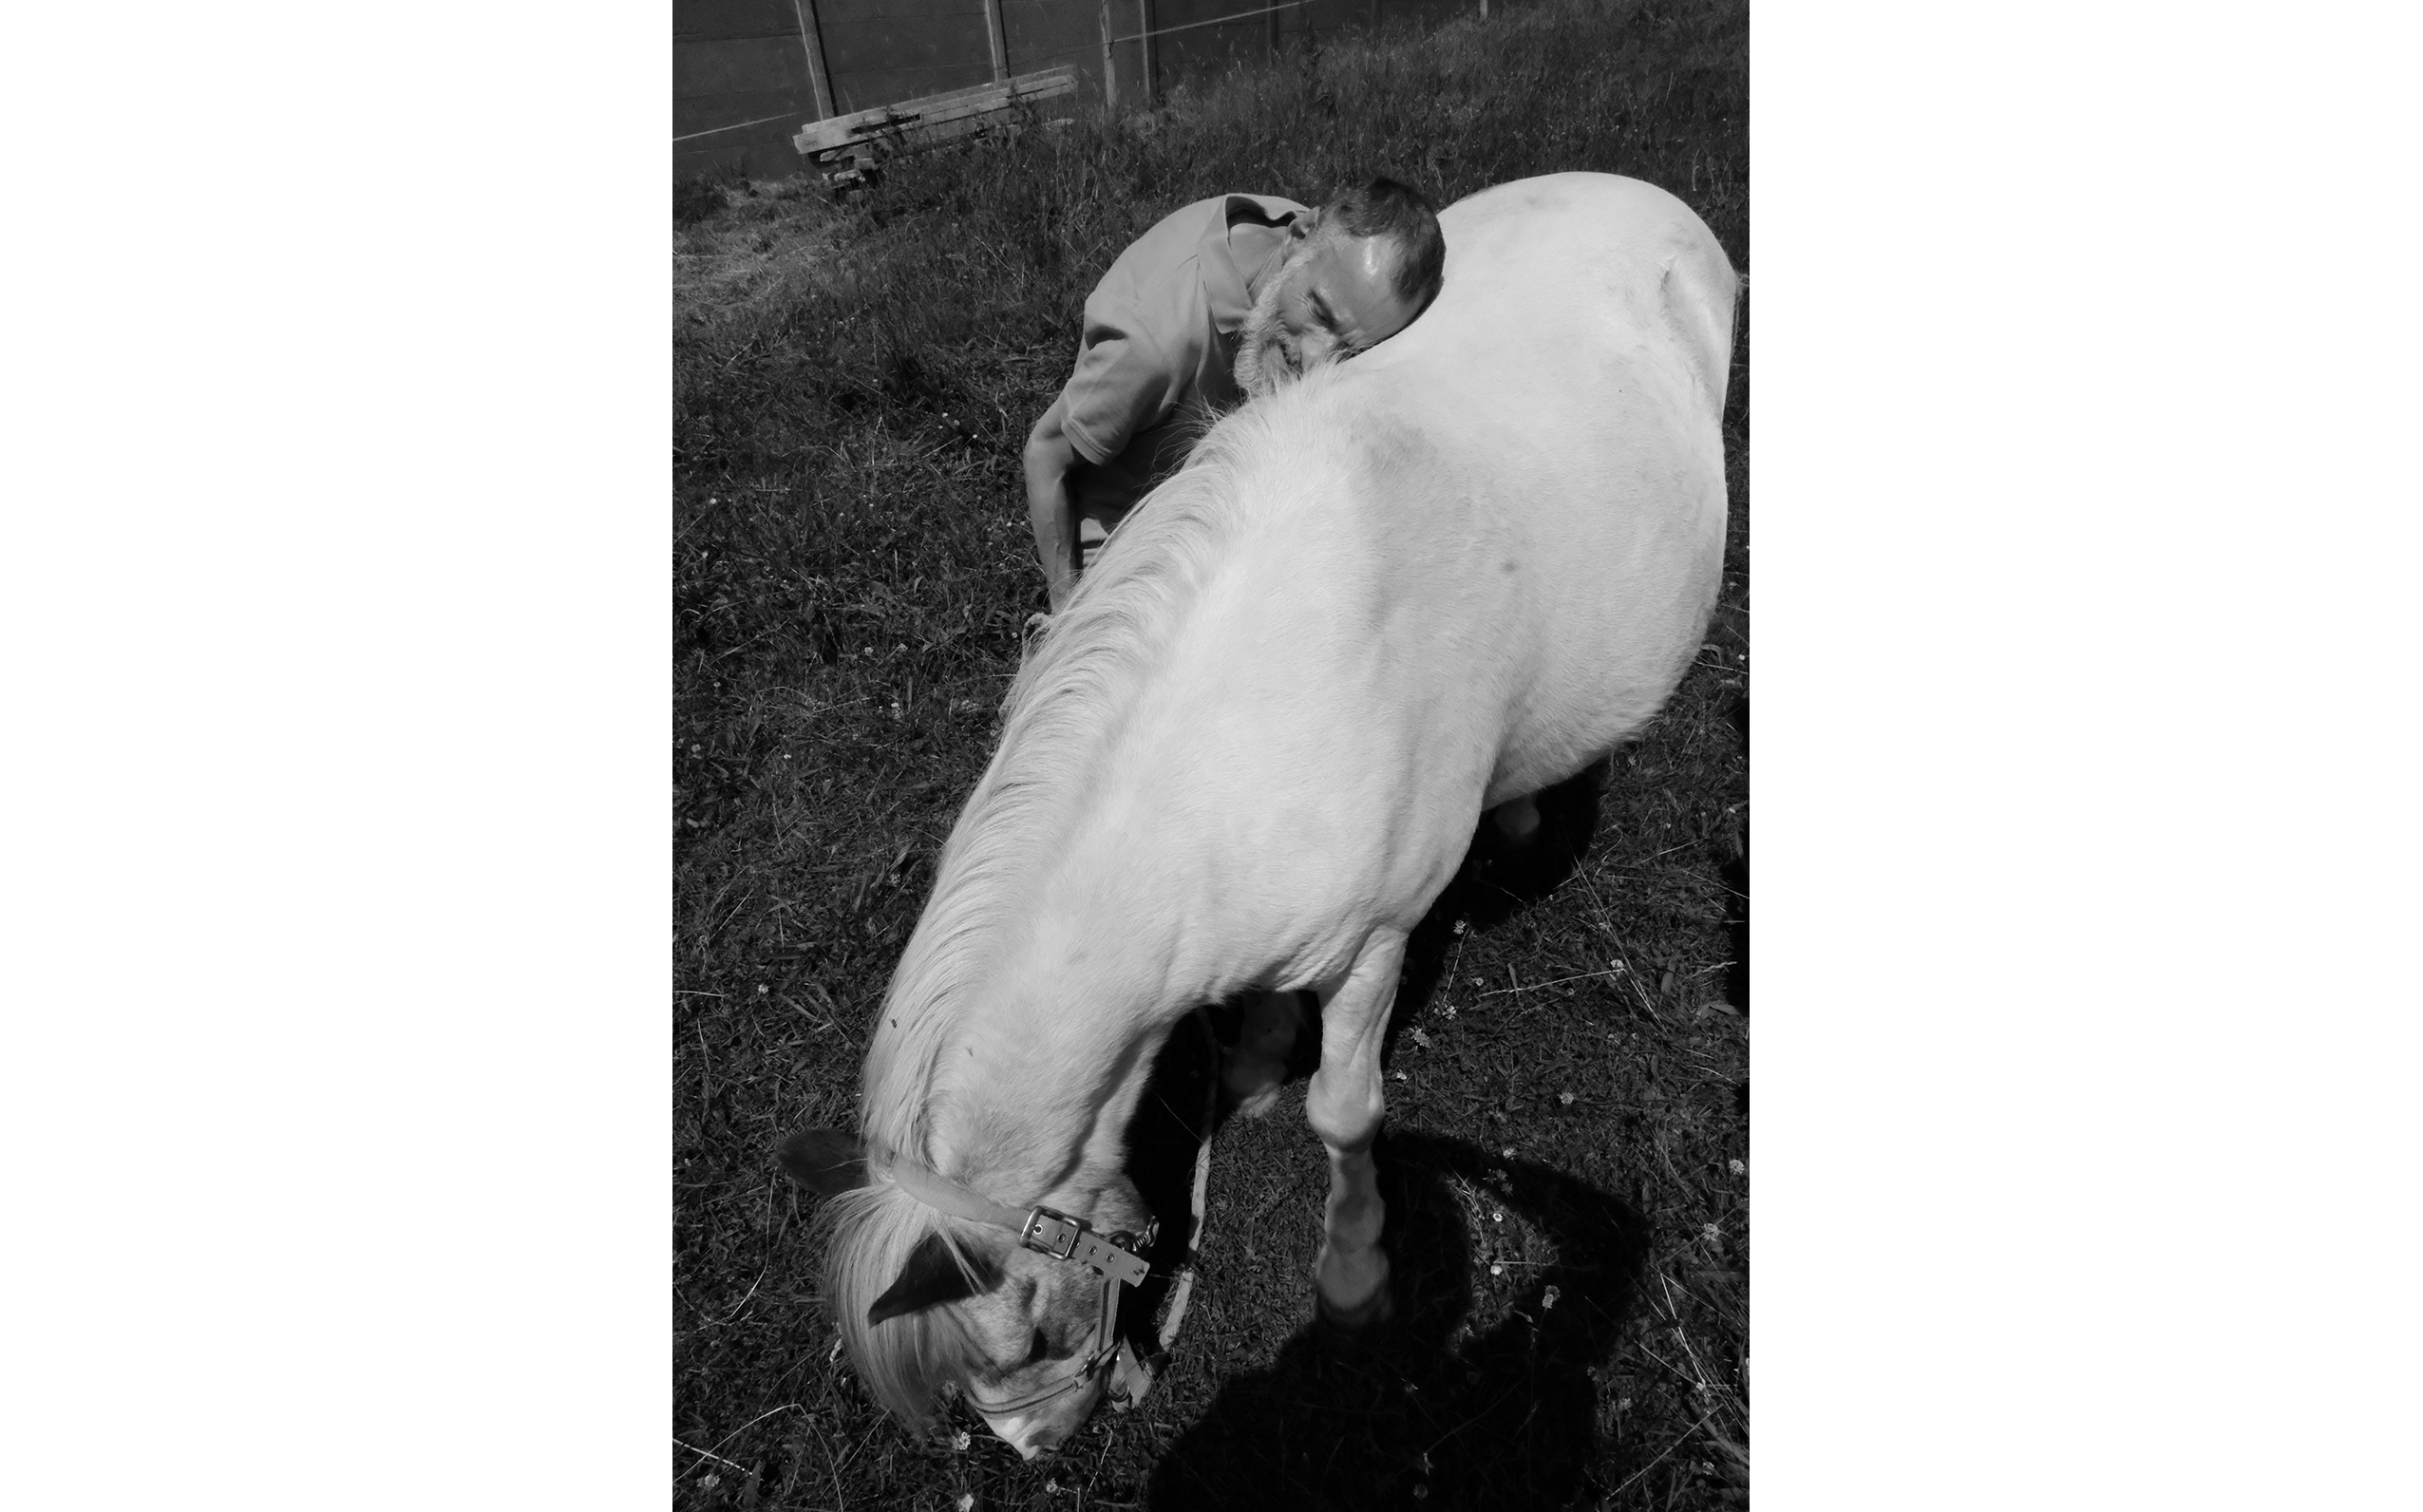 Séance d’équithérapie. Joël adore ce cheval qu’il caresse et câline pendant des heures.